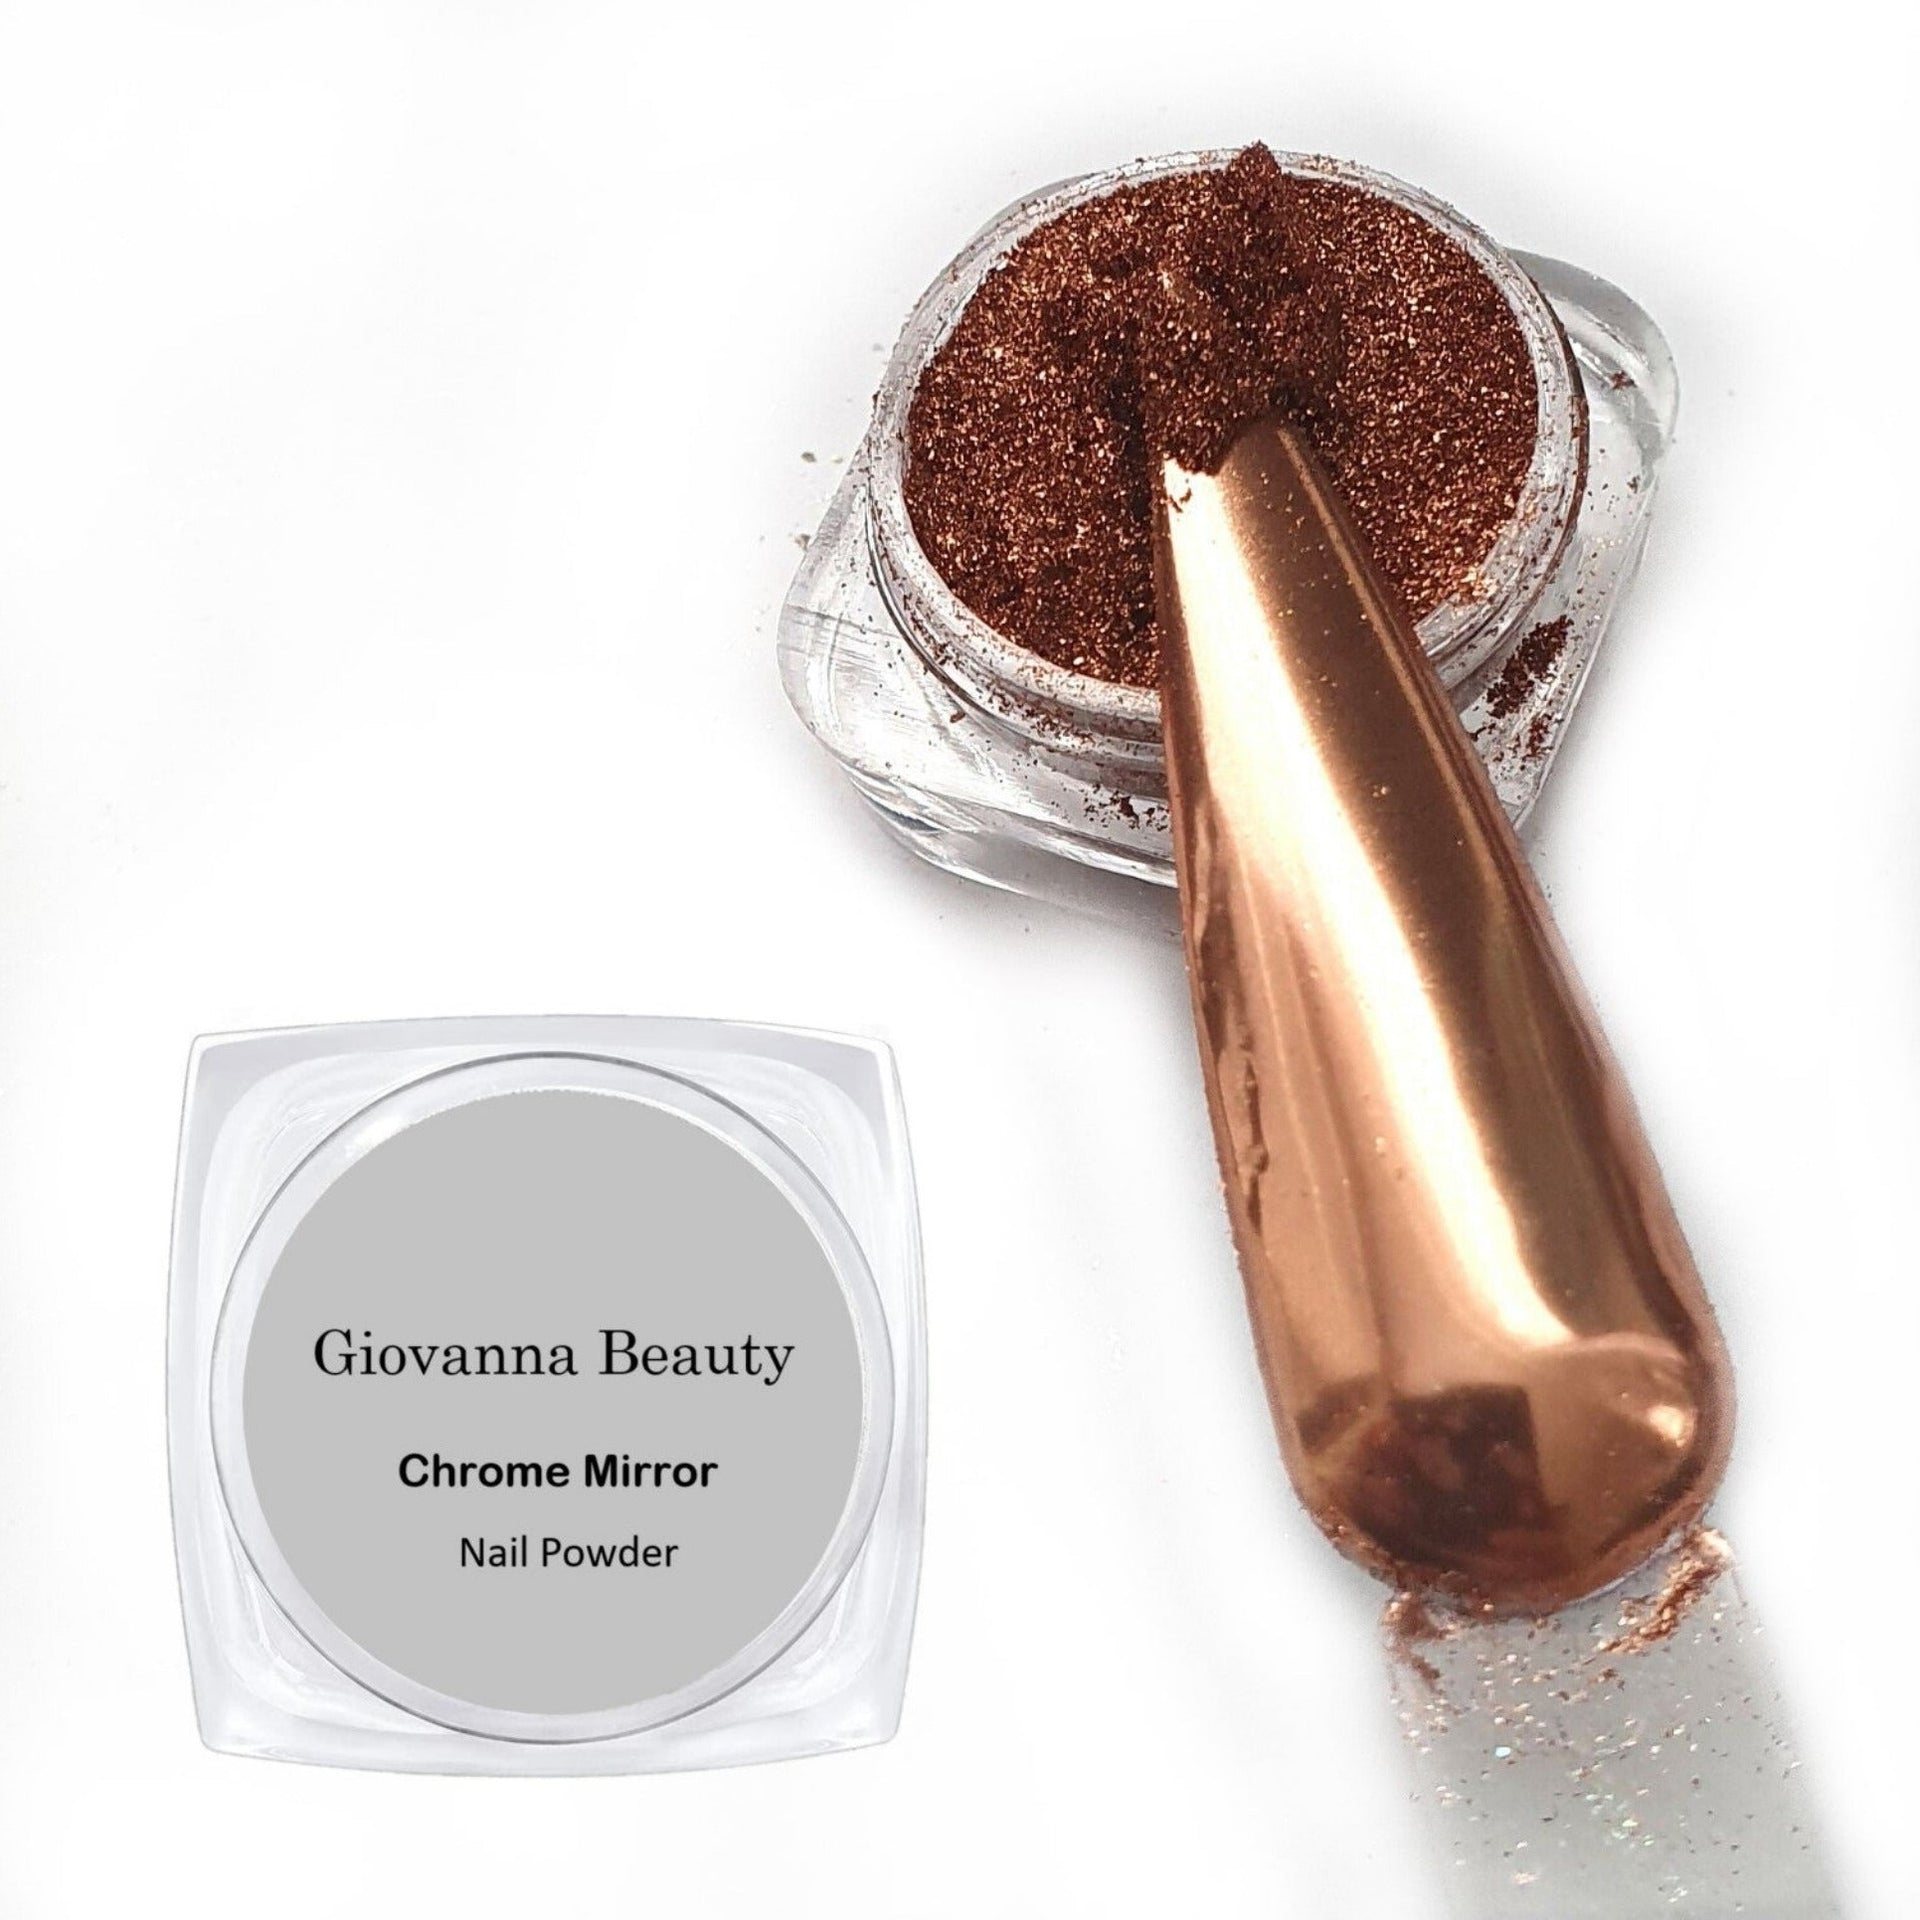 ANCIENT GOLD CHROME NAIL POWDER – Giovanna Beauty